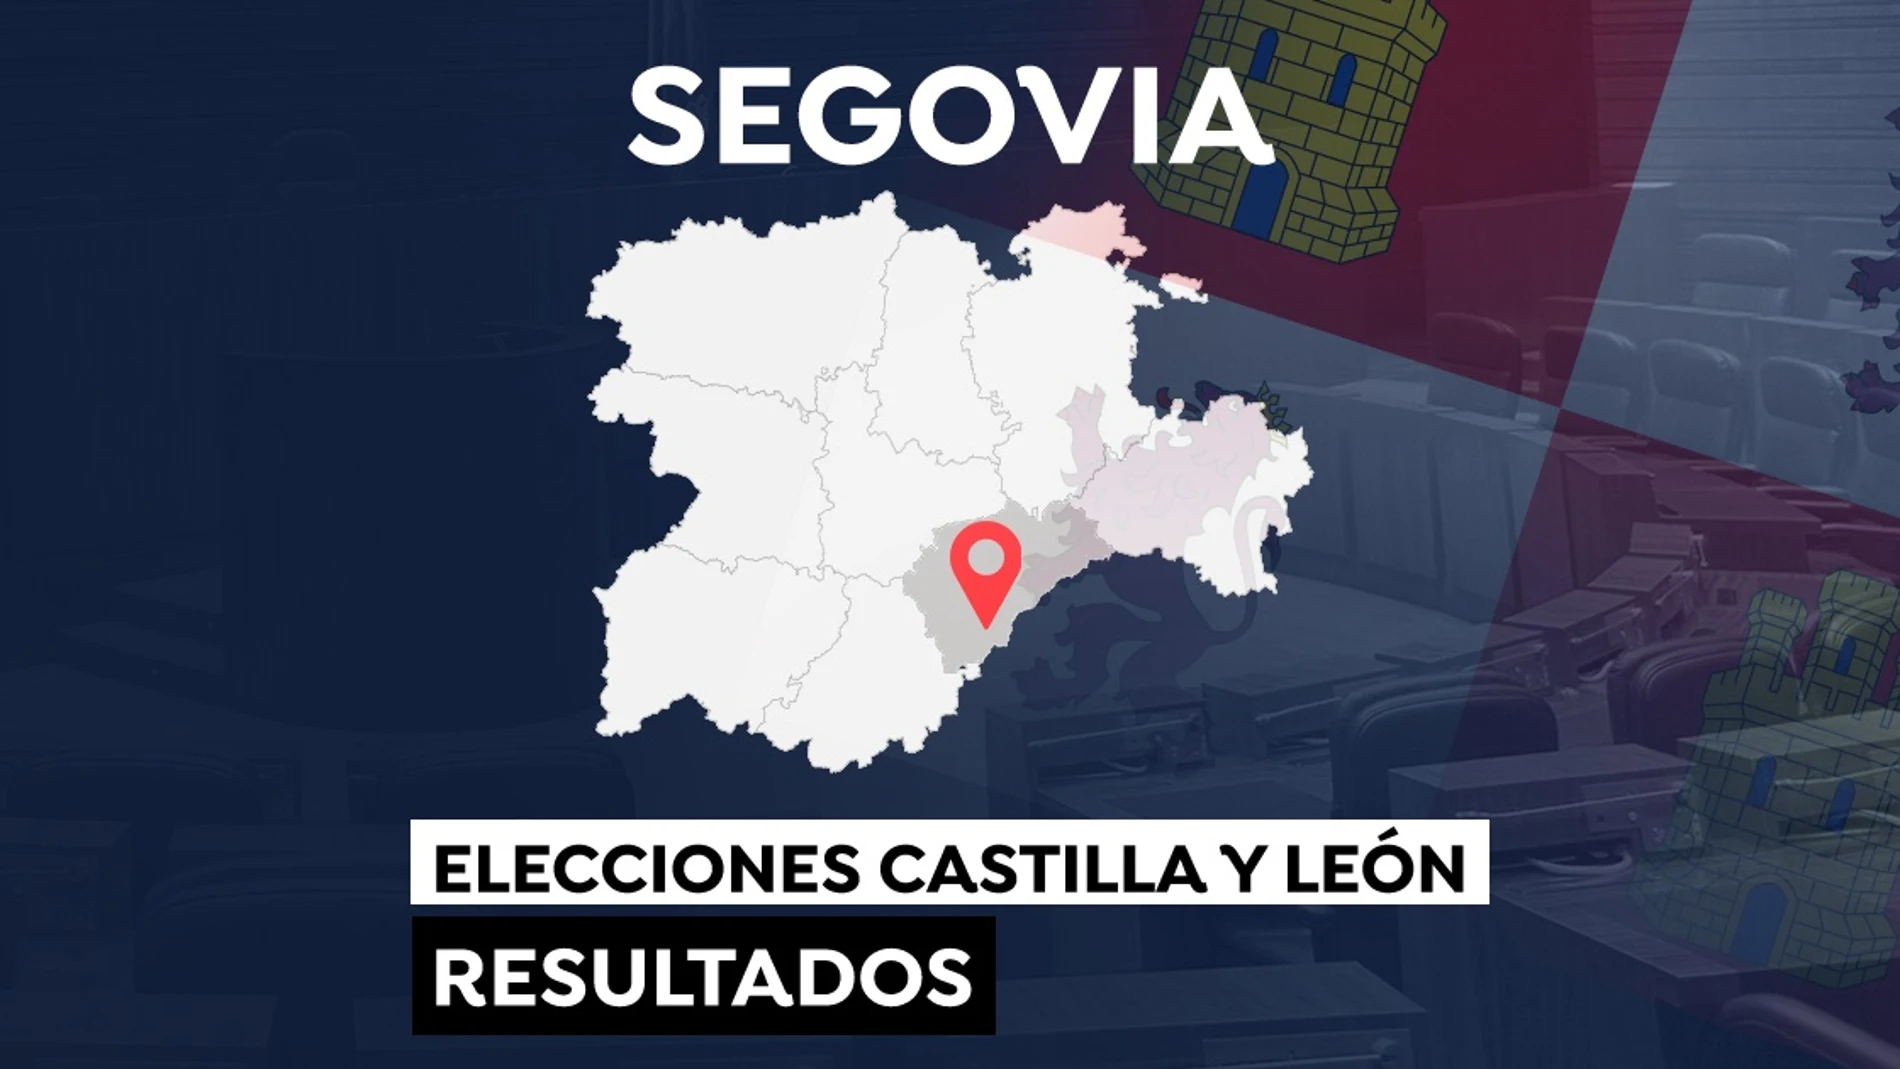 Elecciones a las Cortes de Castilla y León 2022: Resultado en el municipio de Segovia